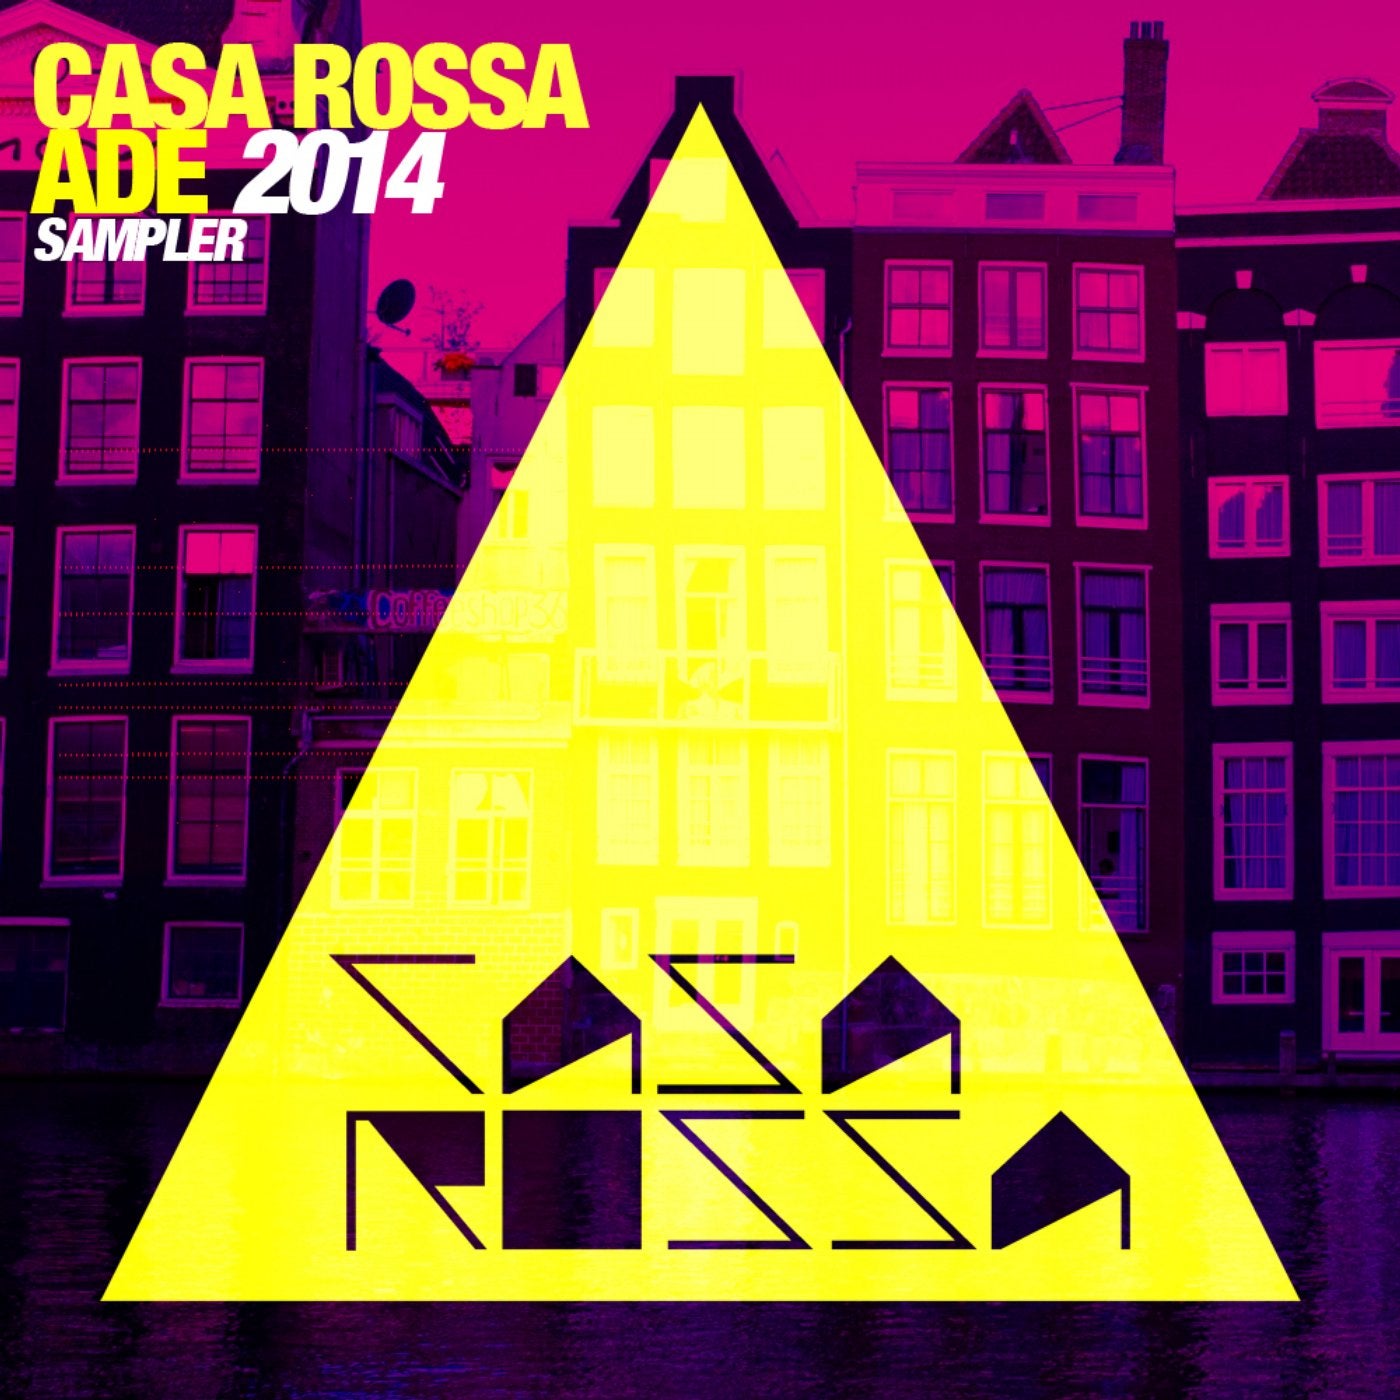 Casa Rossa ADE 2014 Sampler